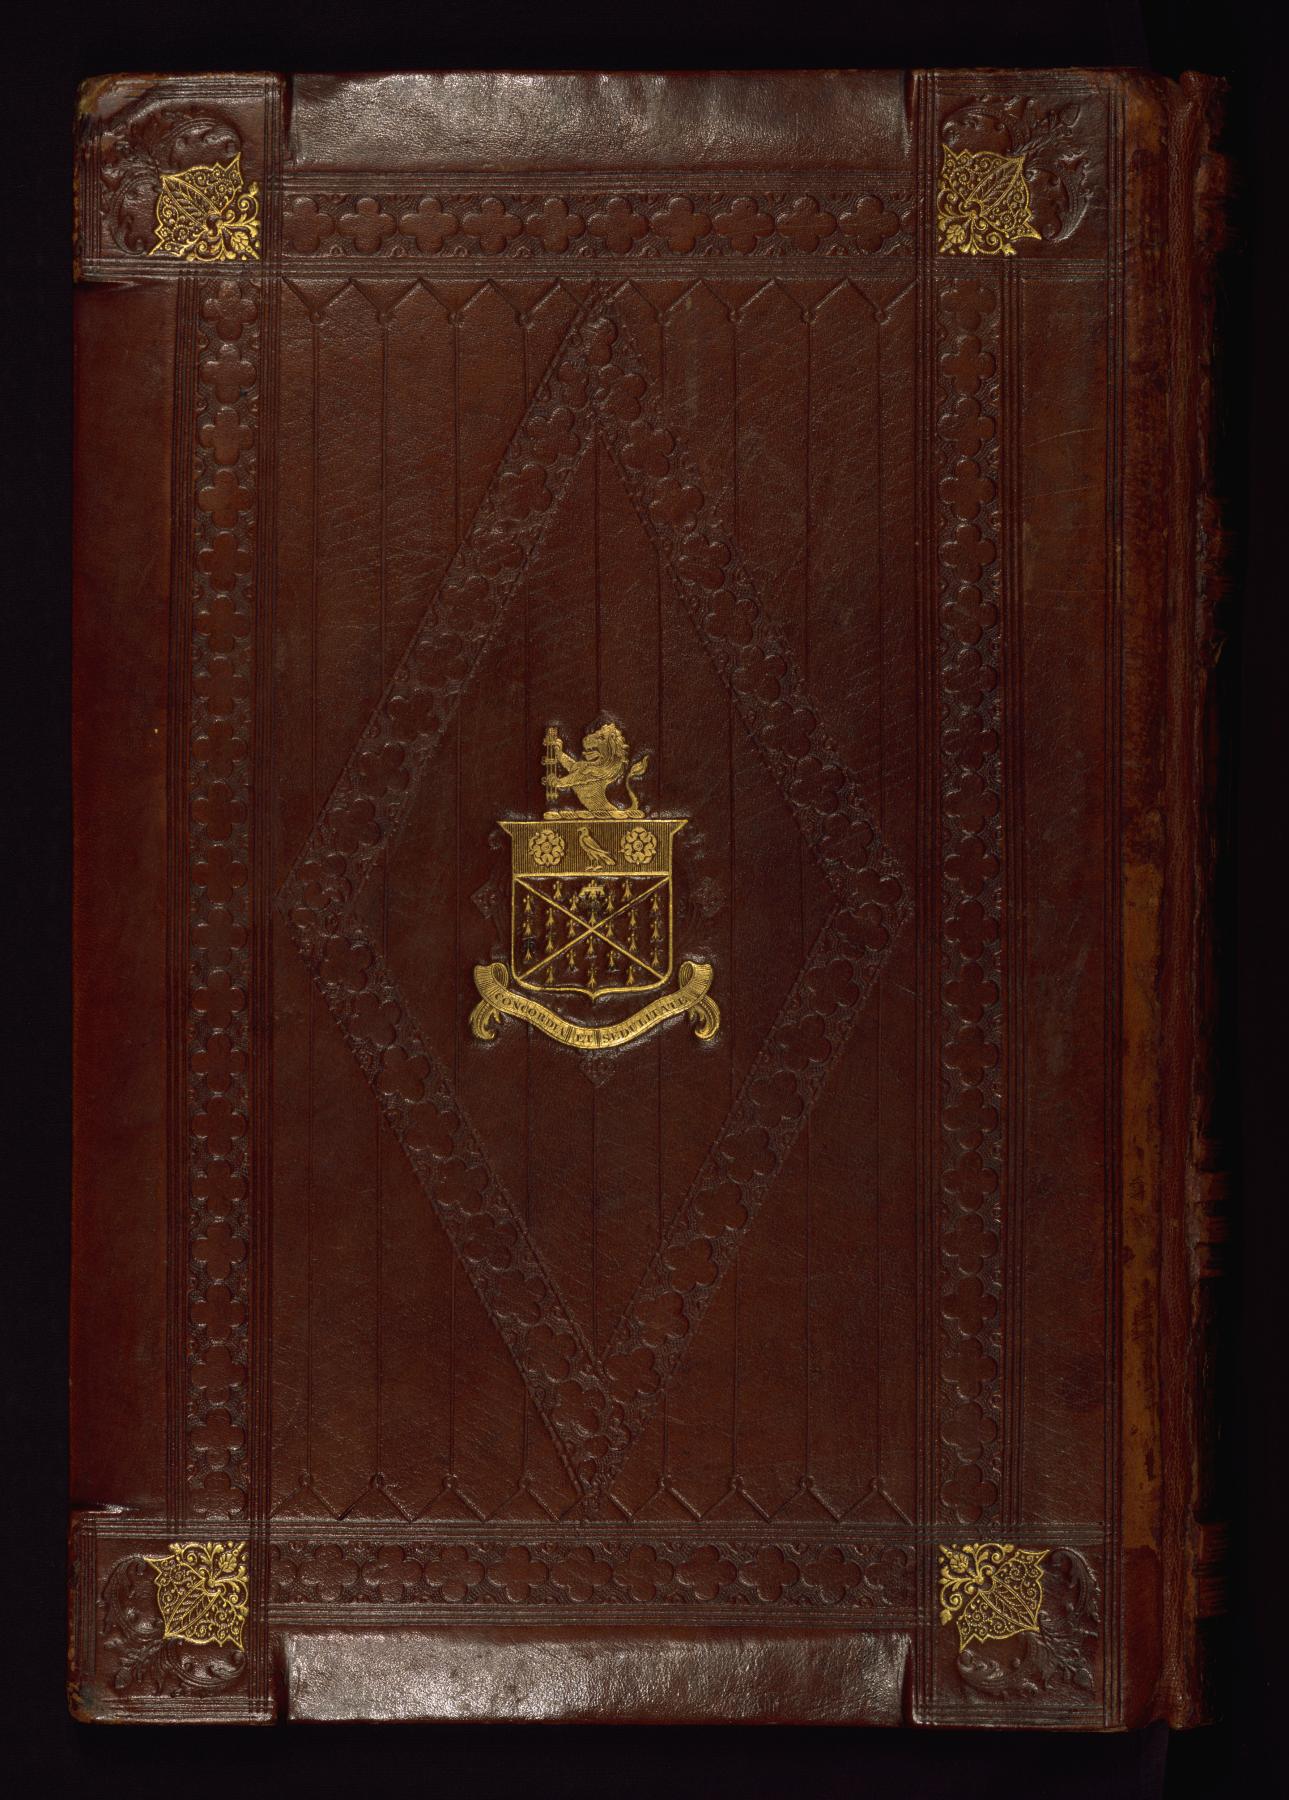 Image for Binding from Les livres du gouvernement des roys et des princes